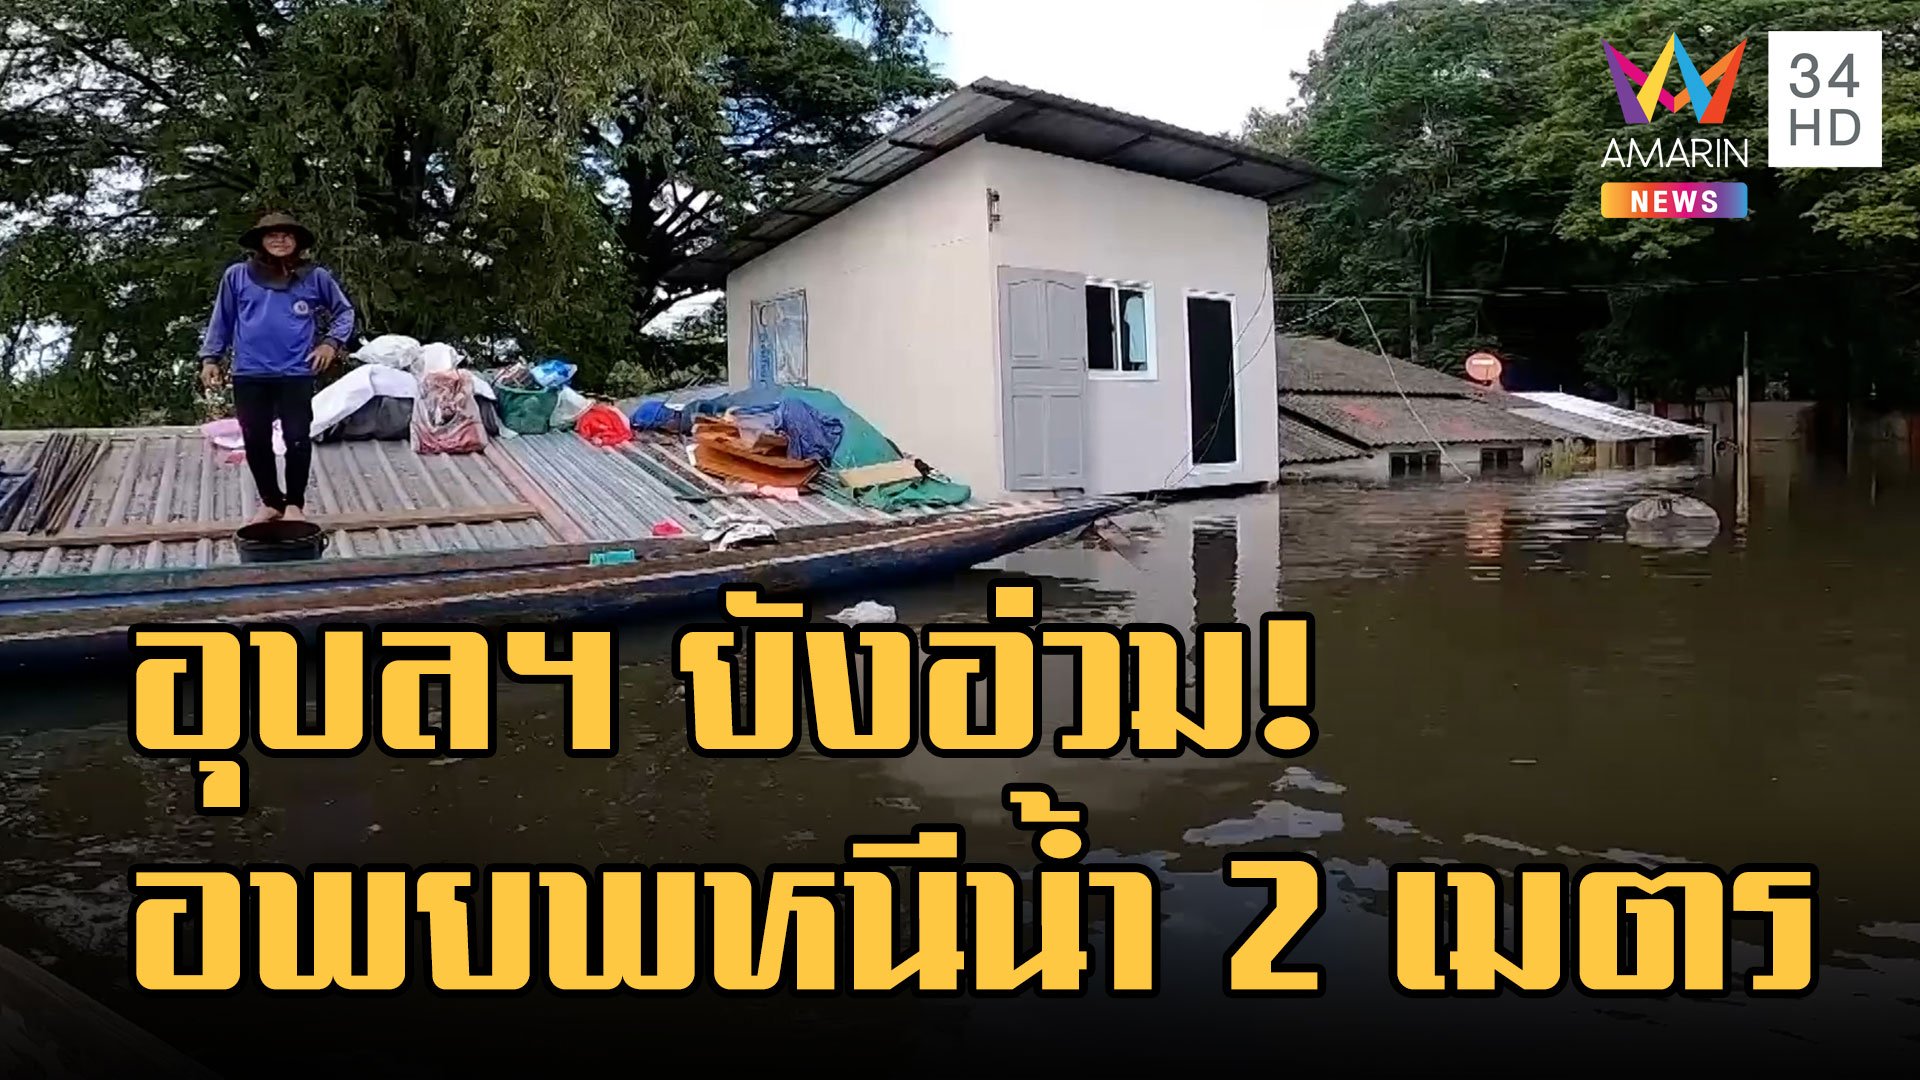 ชาวบ้านริมแม่น้ำมูลอ่วม น้ำท่วมสูง 2 เมตร อพยพอาศัยวัดท่าบ่อ | ข่าวเที่ยงอมรินทร์ | 14 ต.ค. 65 | AMARIN TVHD34